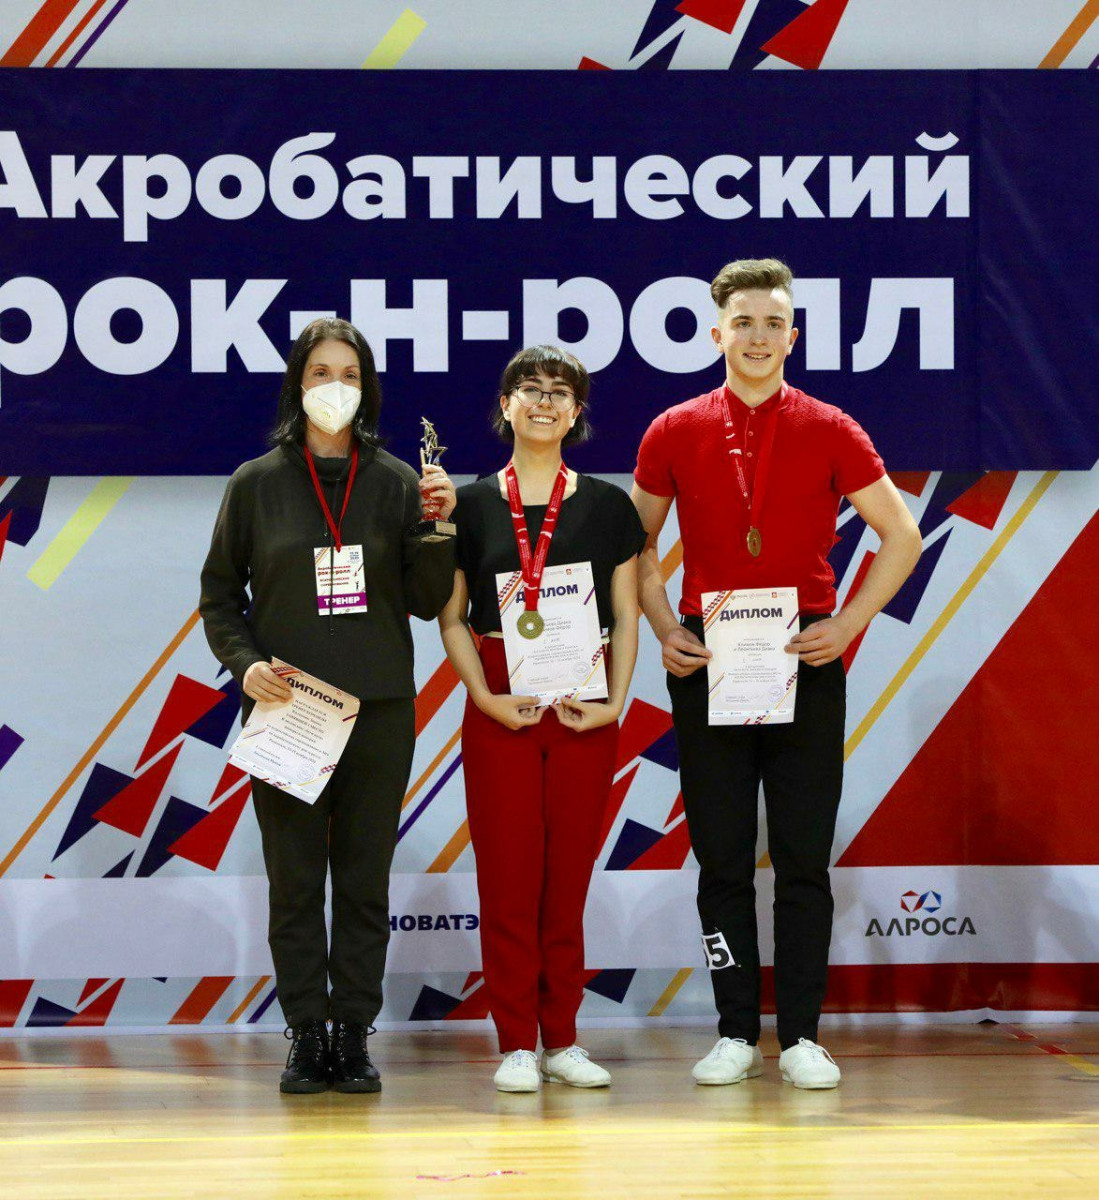 Нижегородцы заняли I место на соревнованиях по акробатическому рок-н-роллу